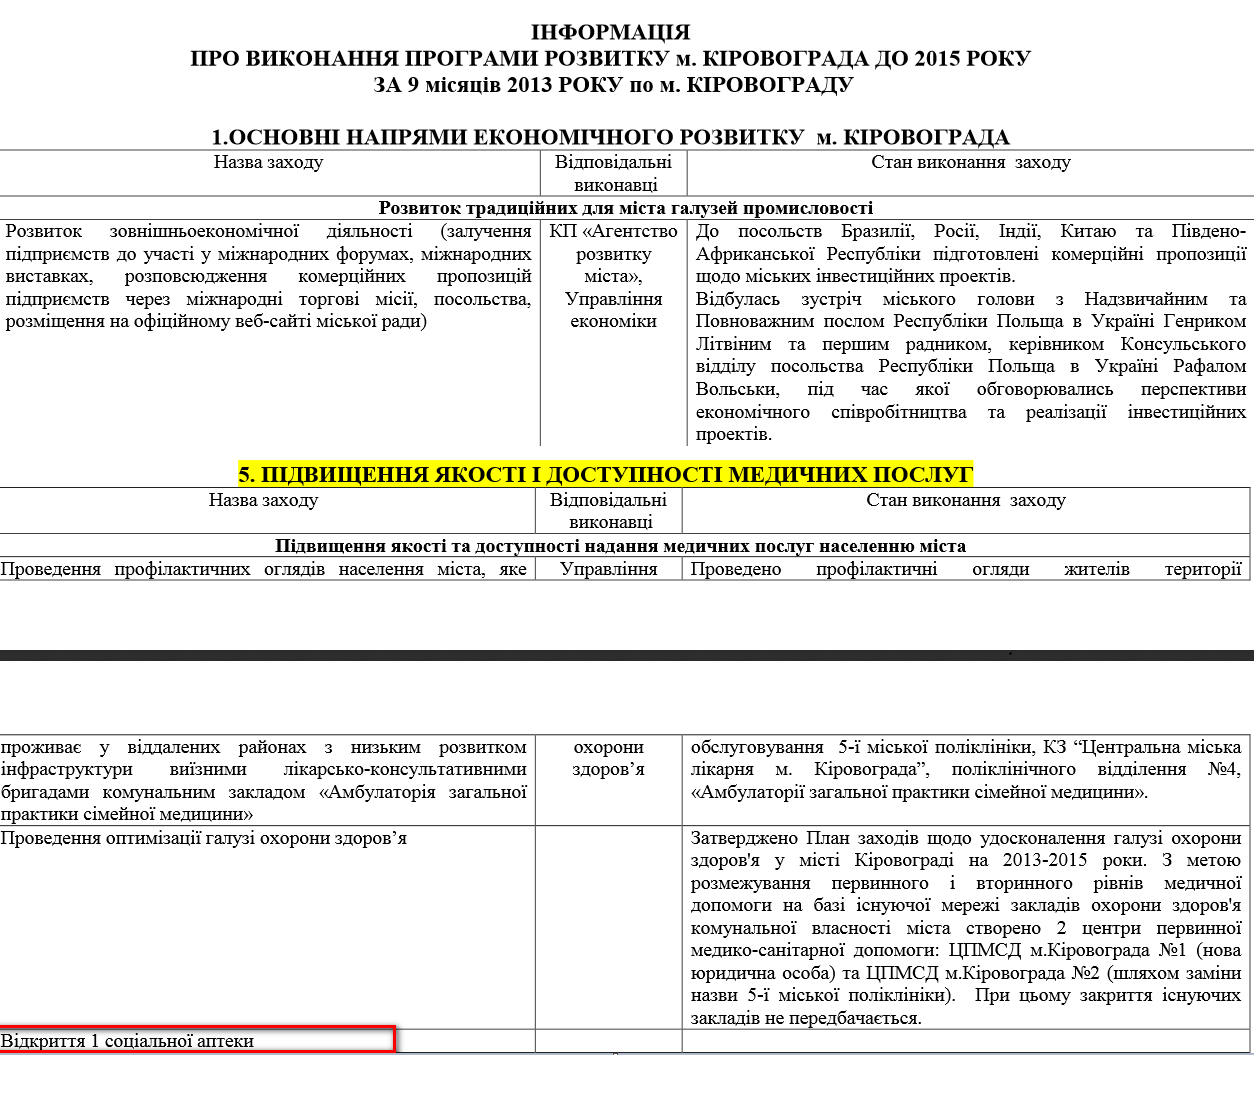 http://www.kr-rada.gov.ua/files/content/files/cp%202013-20131120185154.pdf